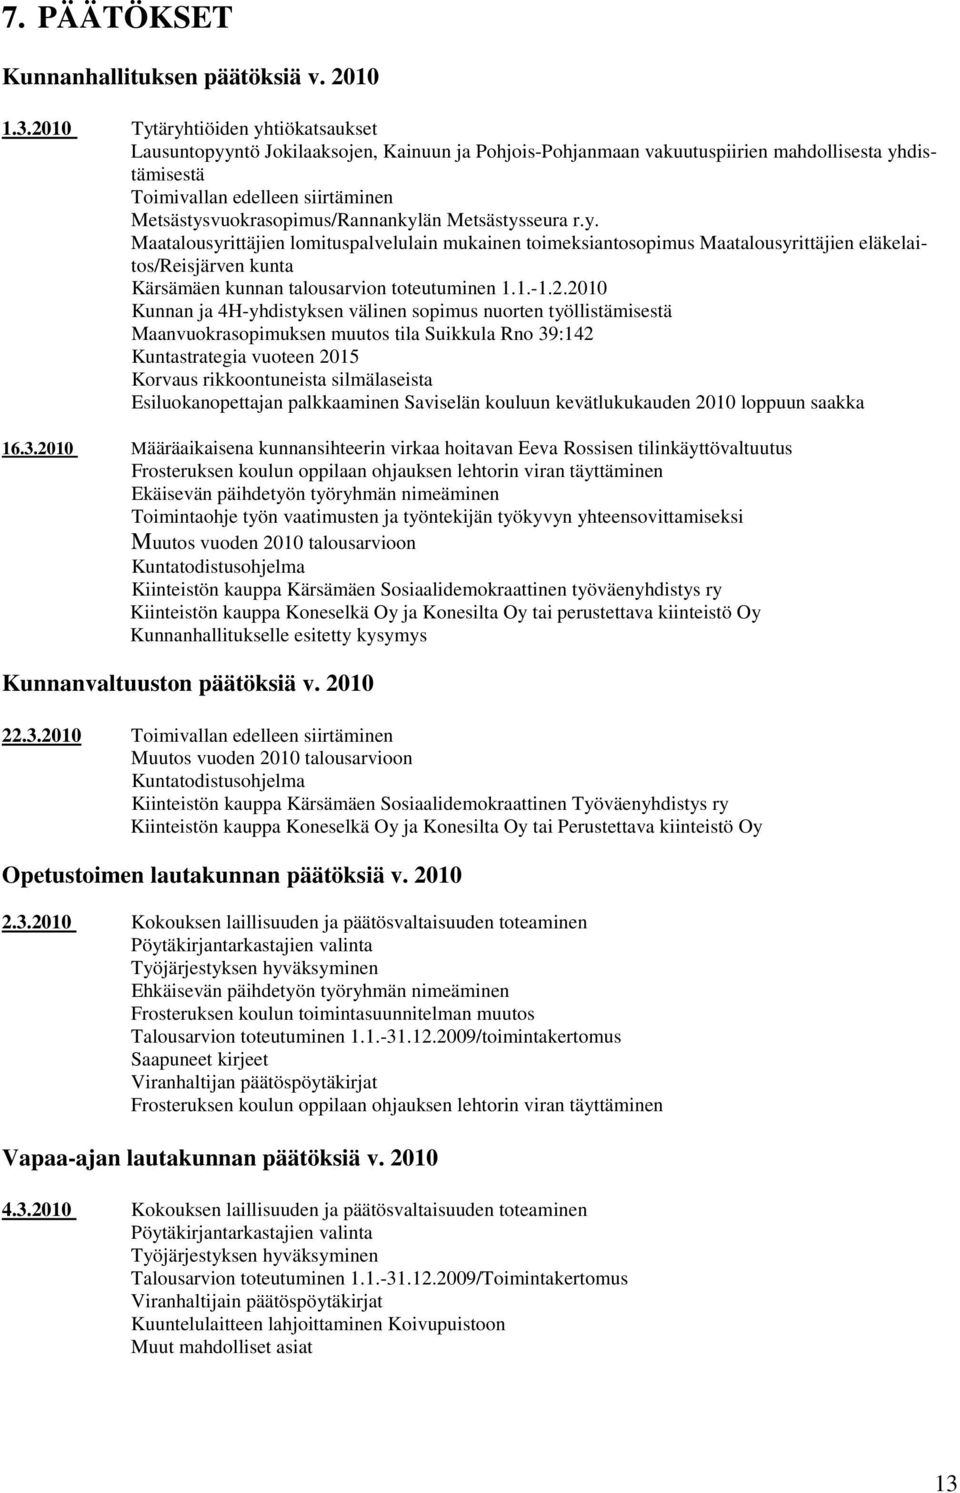 Metsästysvuokrasopimus/Rannankylän Metsästysseura r.y. Maatalousyrittäjien lomituspalvelulain mukainen toimeksiantosopimus Maatalousyrittäjien eläkelaitos/reisjärven kunta Kärsämäen kunnan talousarvion toteutuminen 1.